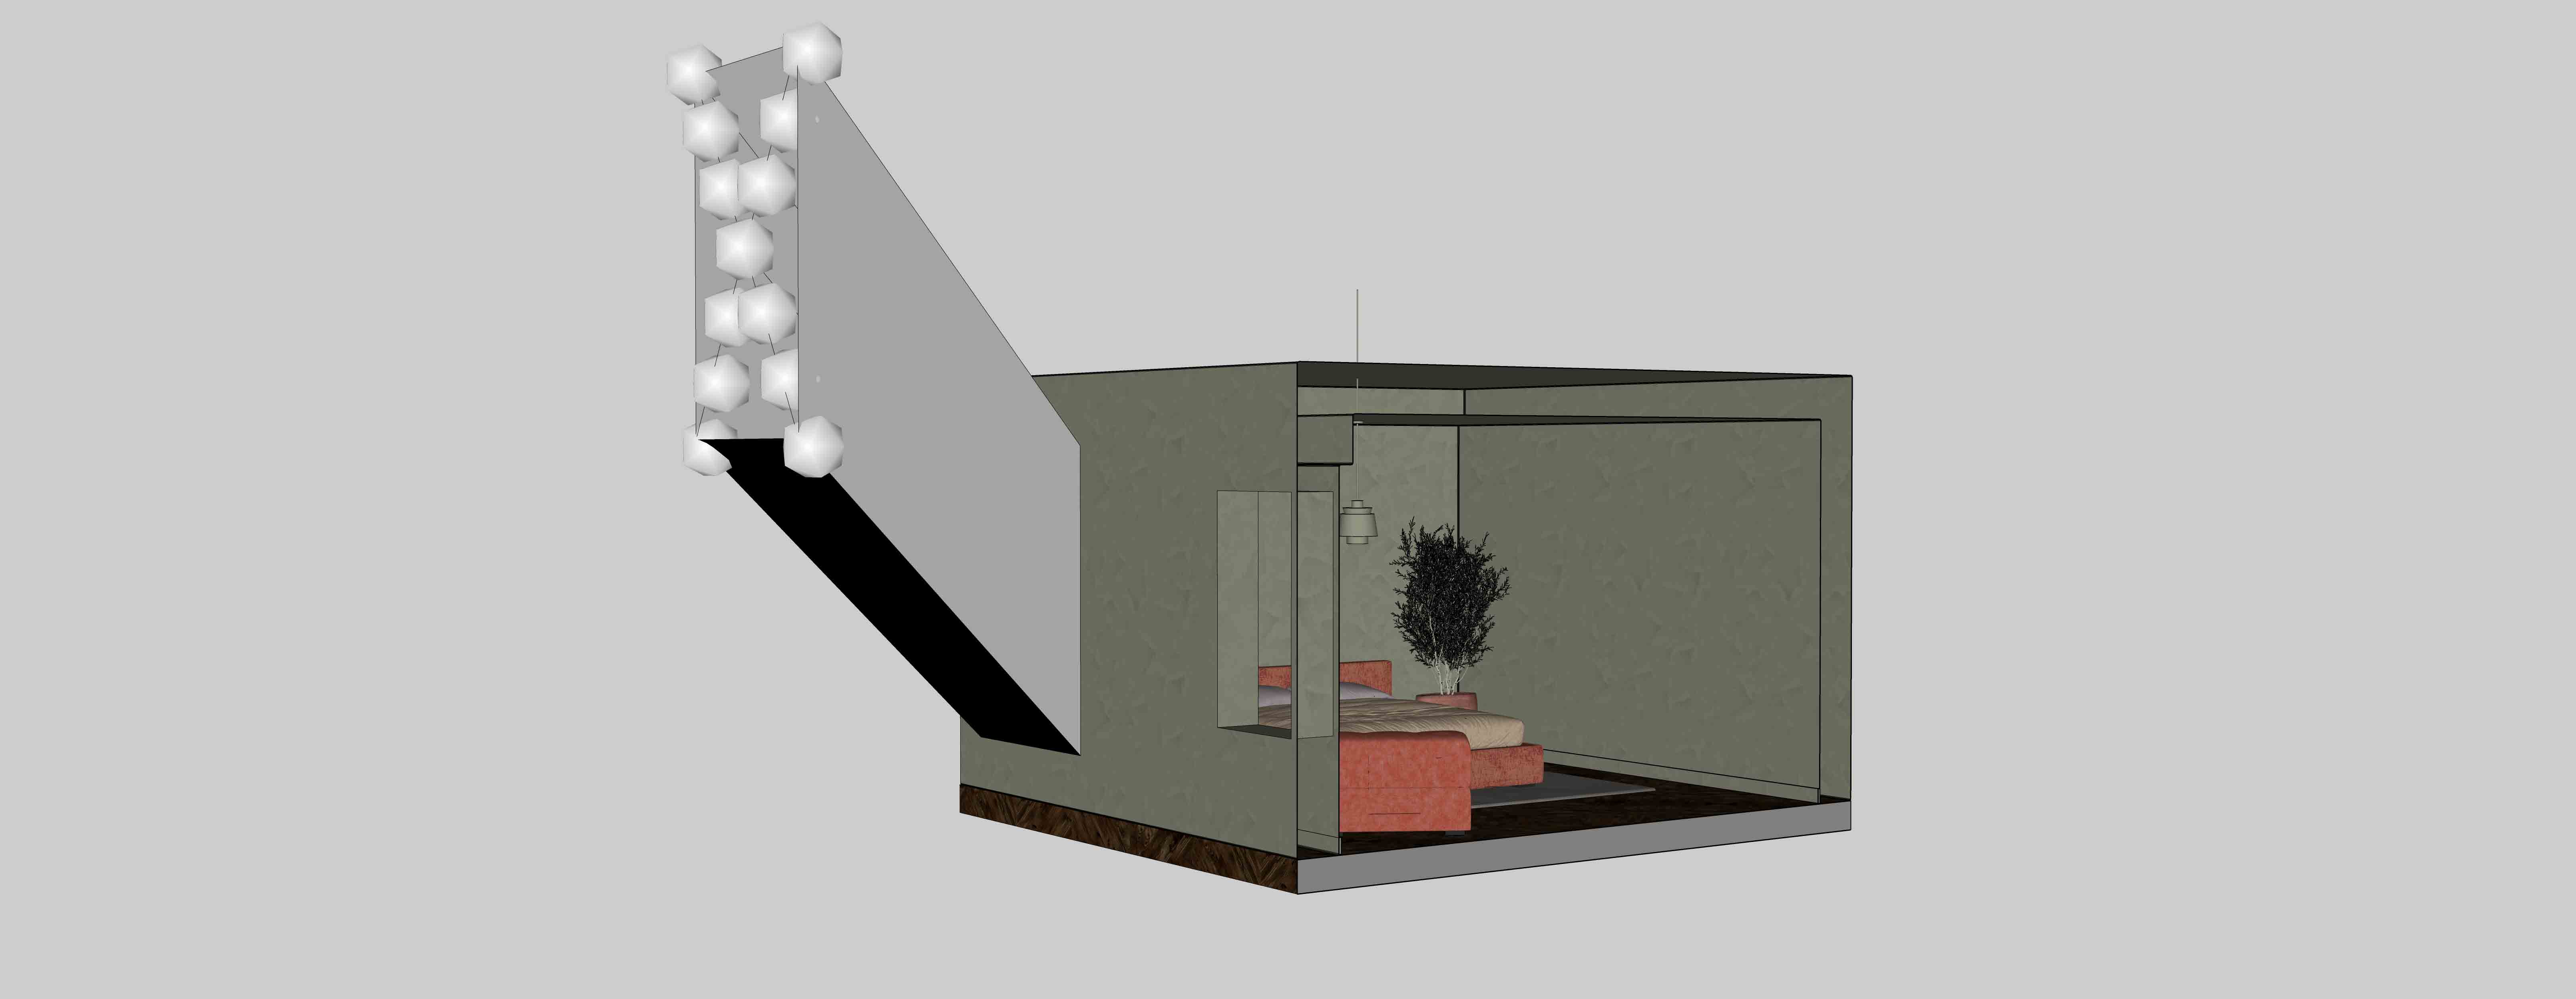 Configuração de iluminação com túnel de luz no Enscape e SketchUp